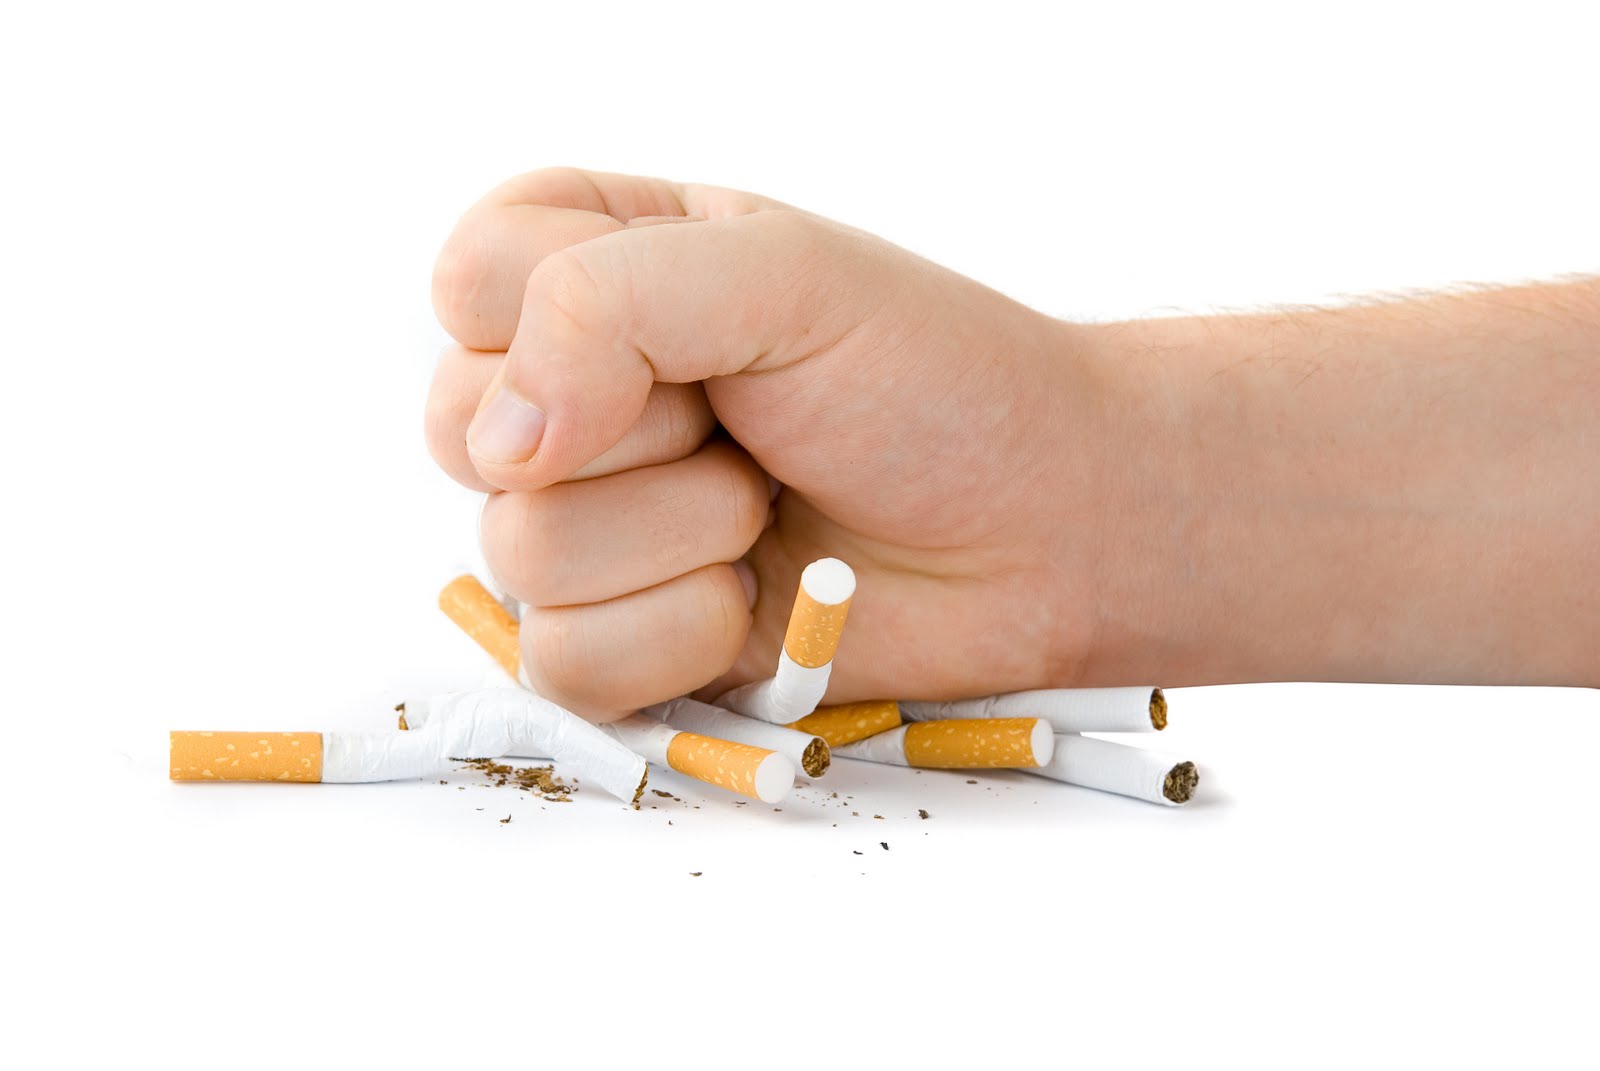 Κάπνισμα: Εντυπωσιακή η μείωση στις ηλικίες 16-24 ετών